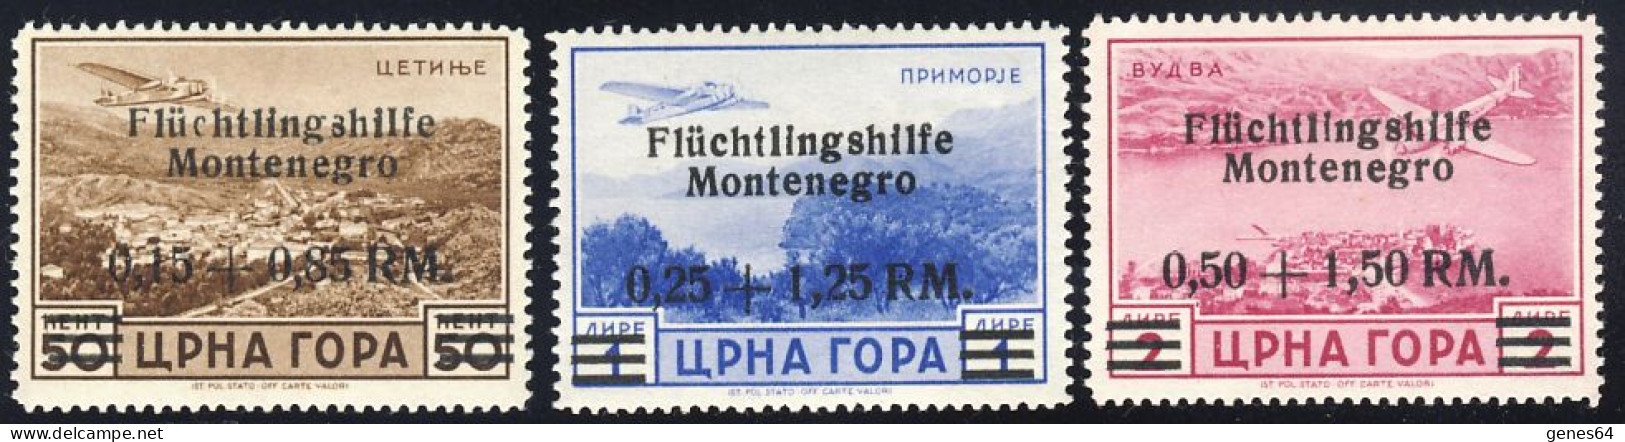 1943 - Emissione Di Cettigne  - Posta Aerea Serie Completa -  Nuovi Linguellati (2 Immagini) - Occup. Tedesca: Montenegro